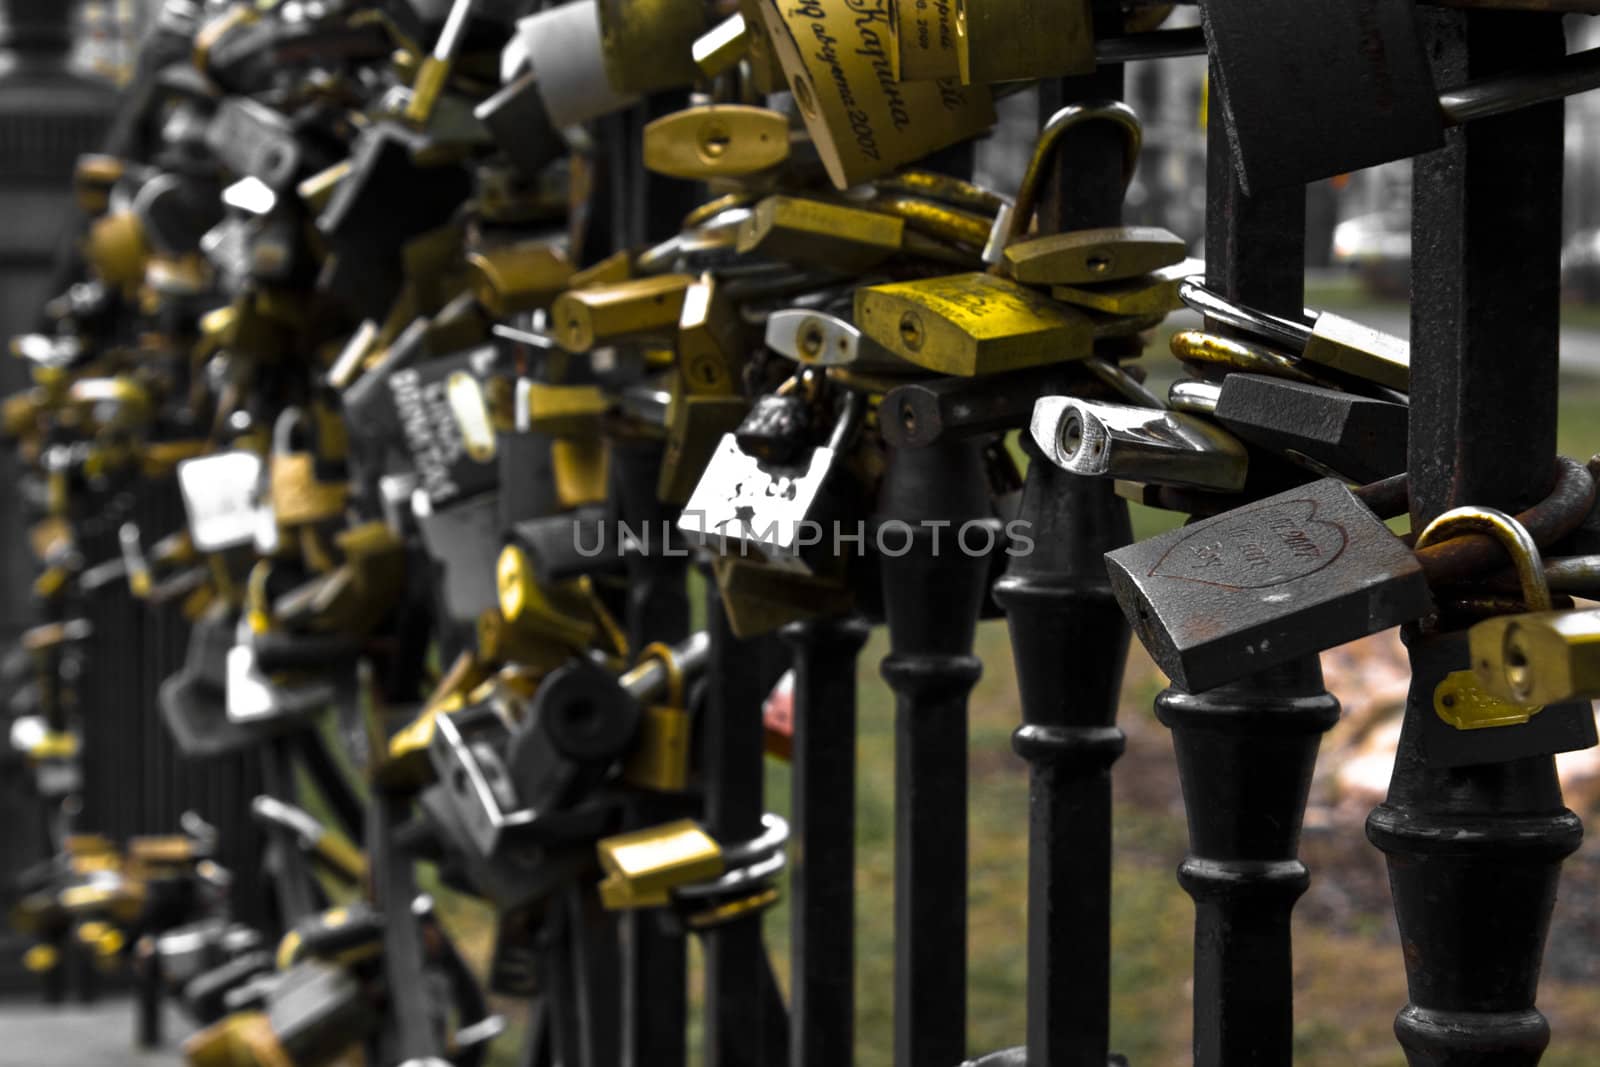 keylocks by nimatypografik